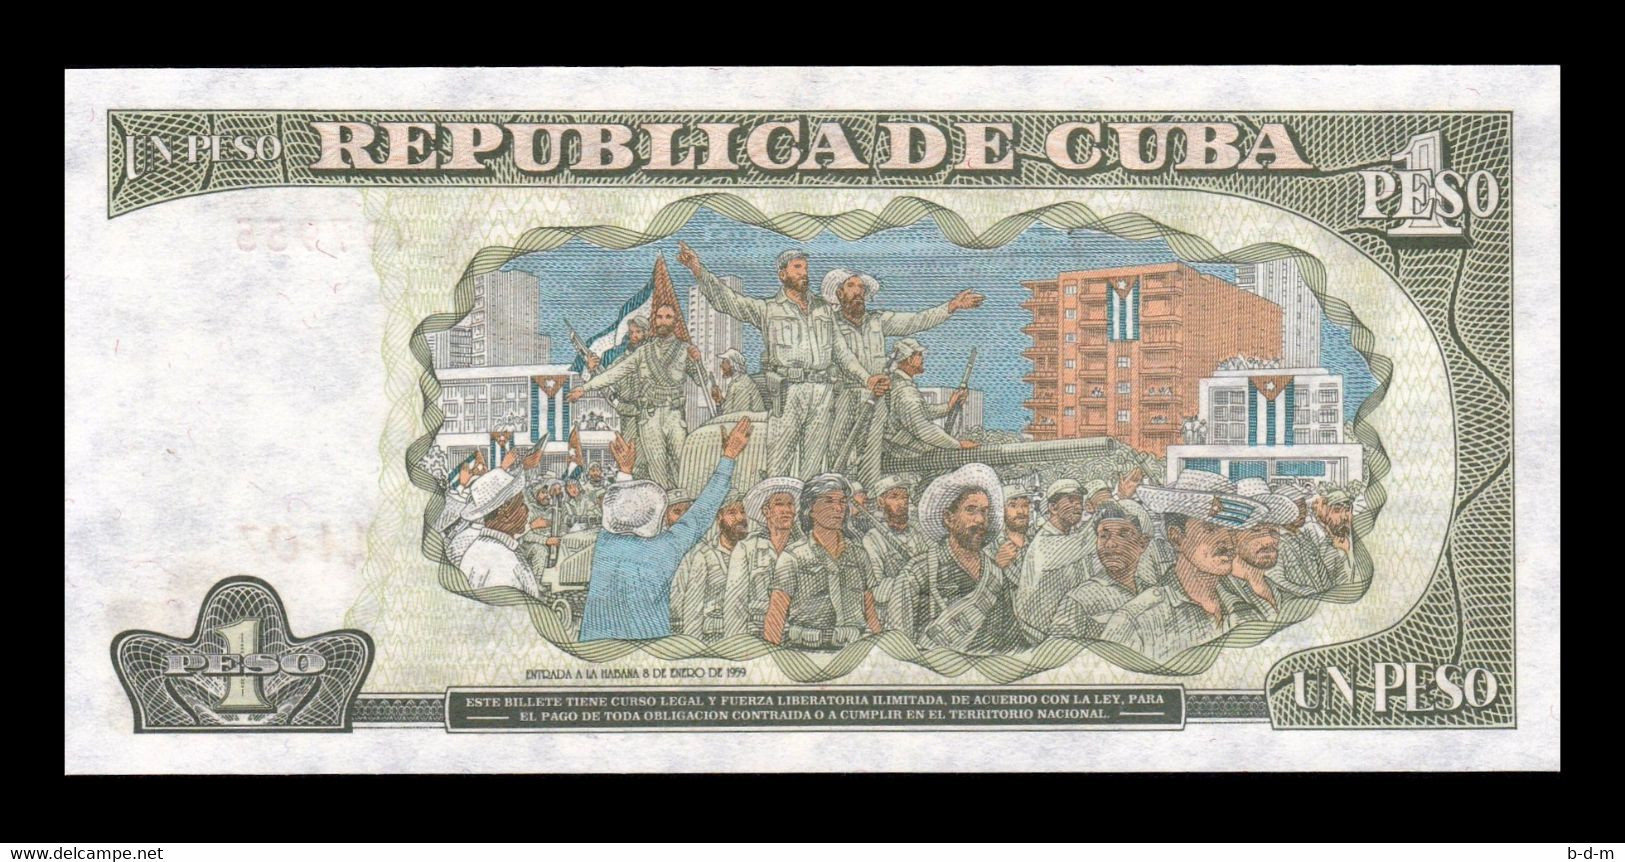 Cuba 1 Peso José Martí 1995 Pick 112 SC UNC - Cuba